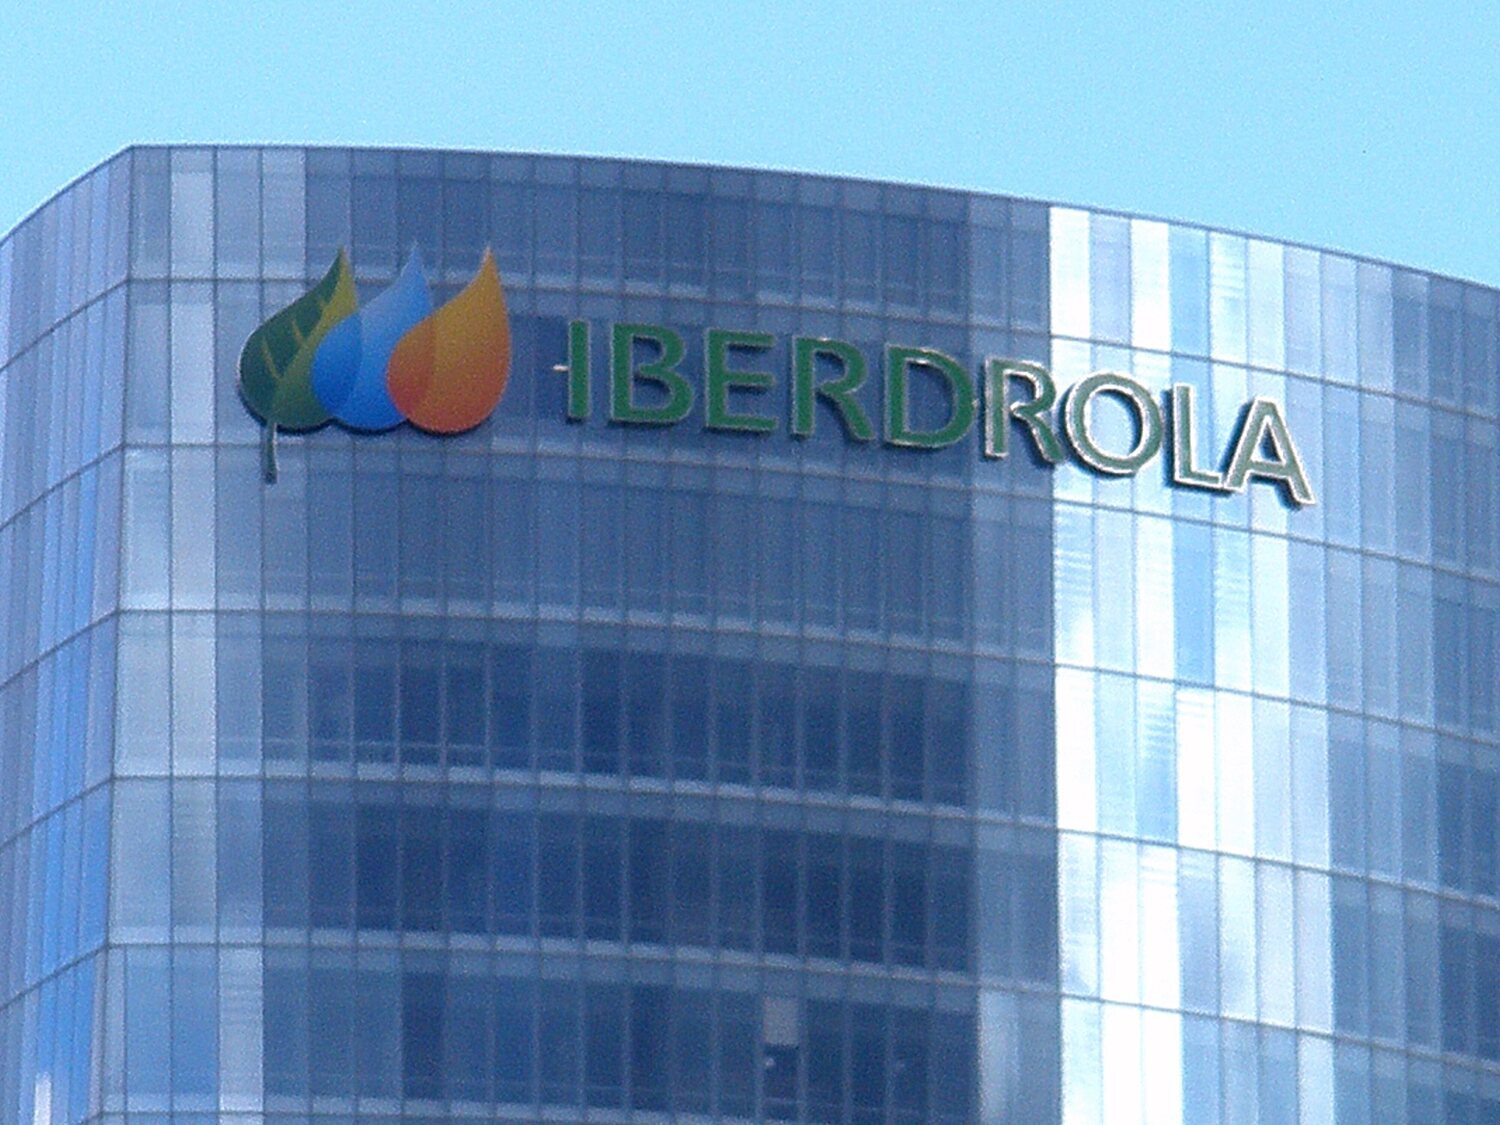 Iberdrola sufre un ciberataque y se publican los datos privados de 600.000 clientes